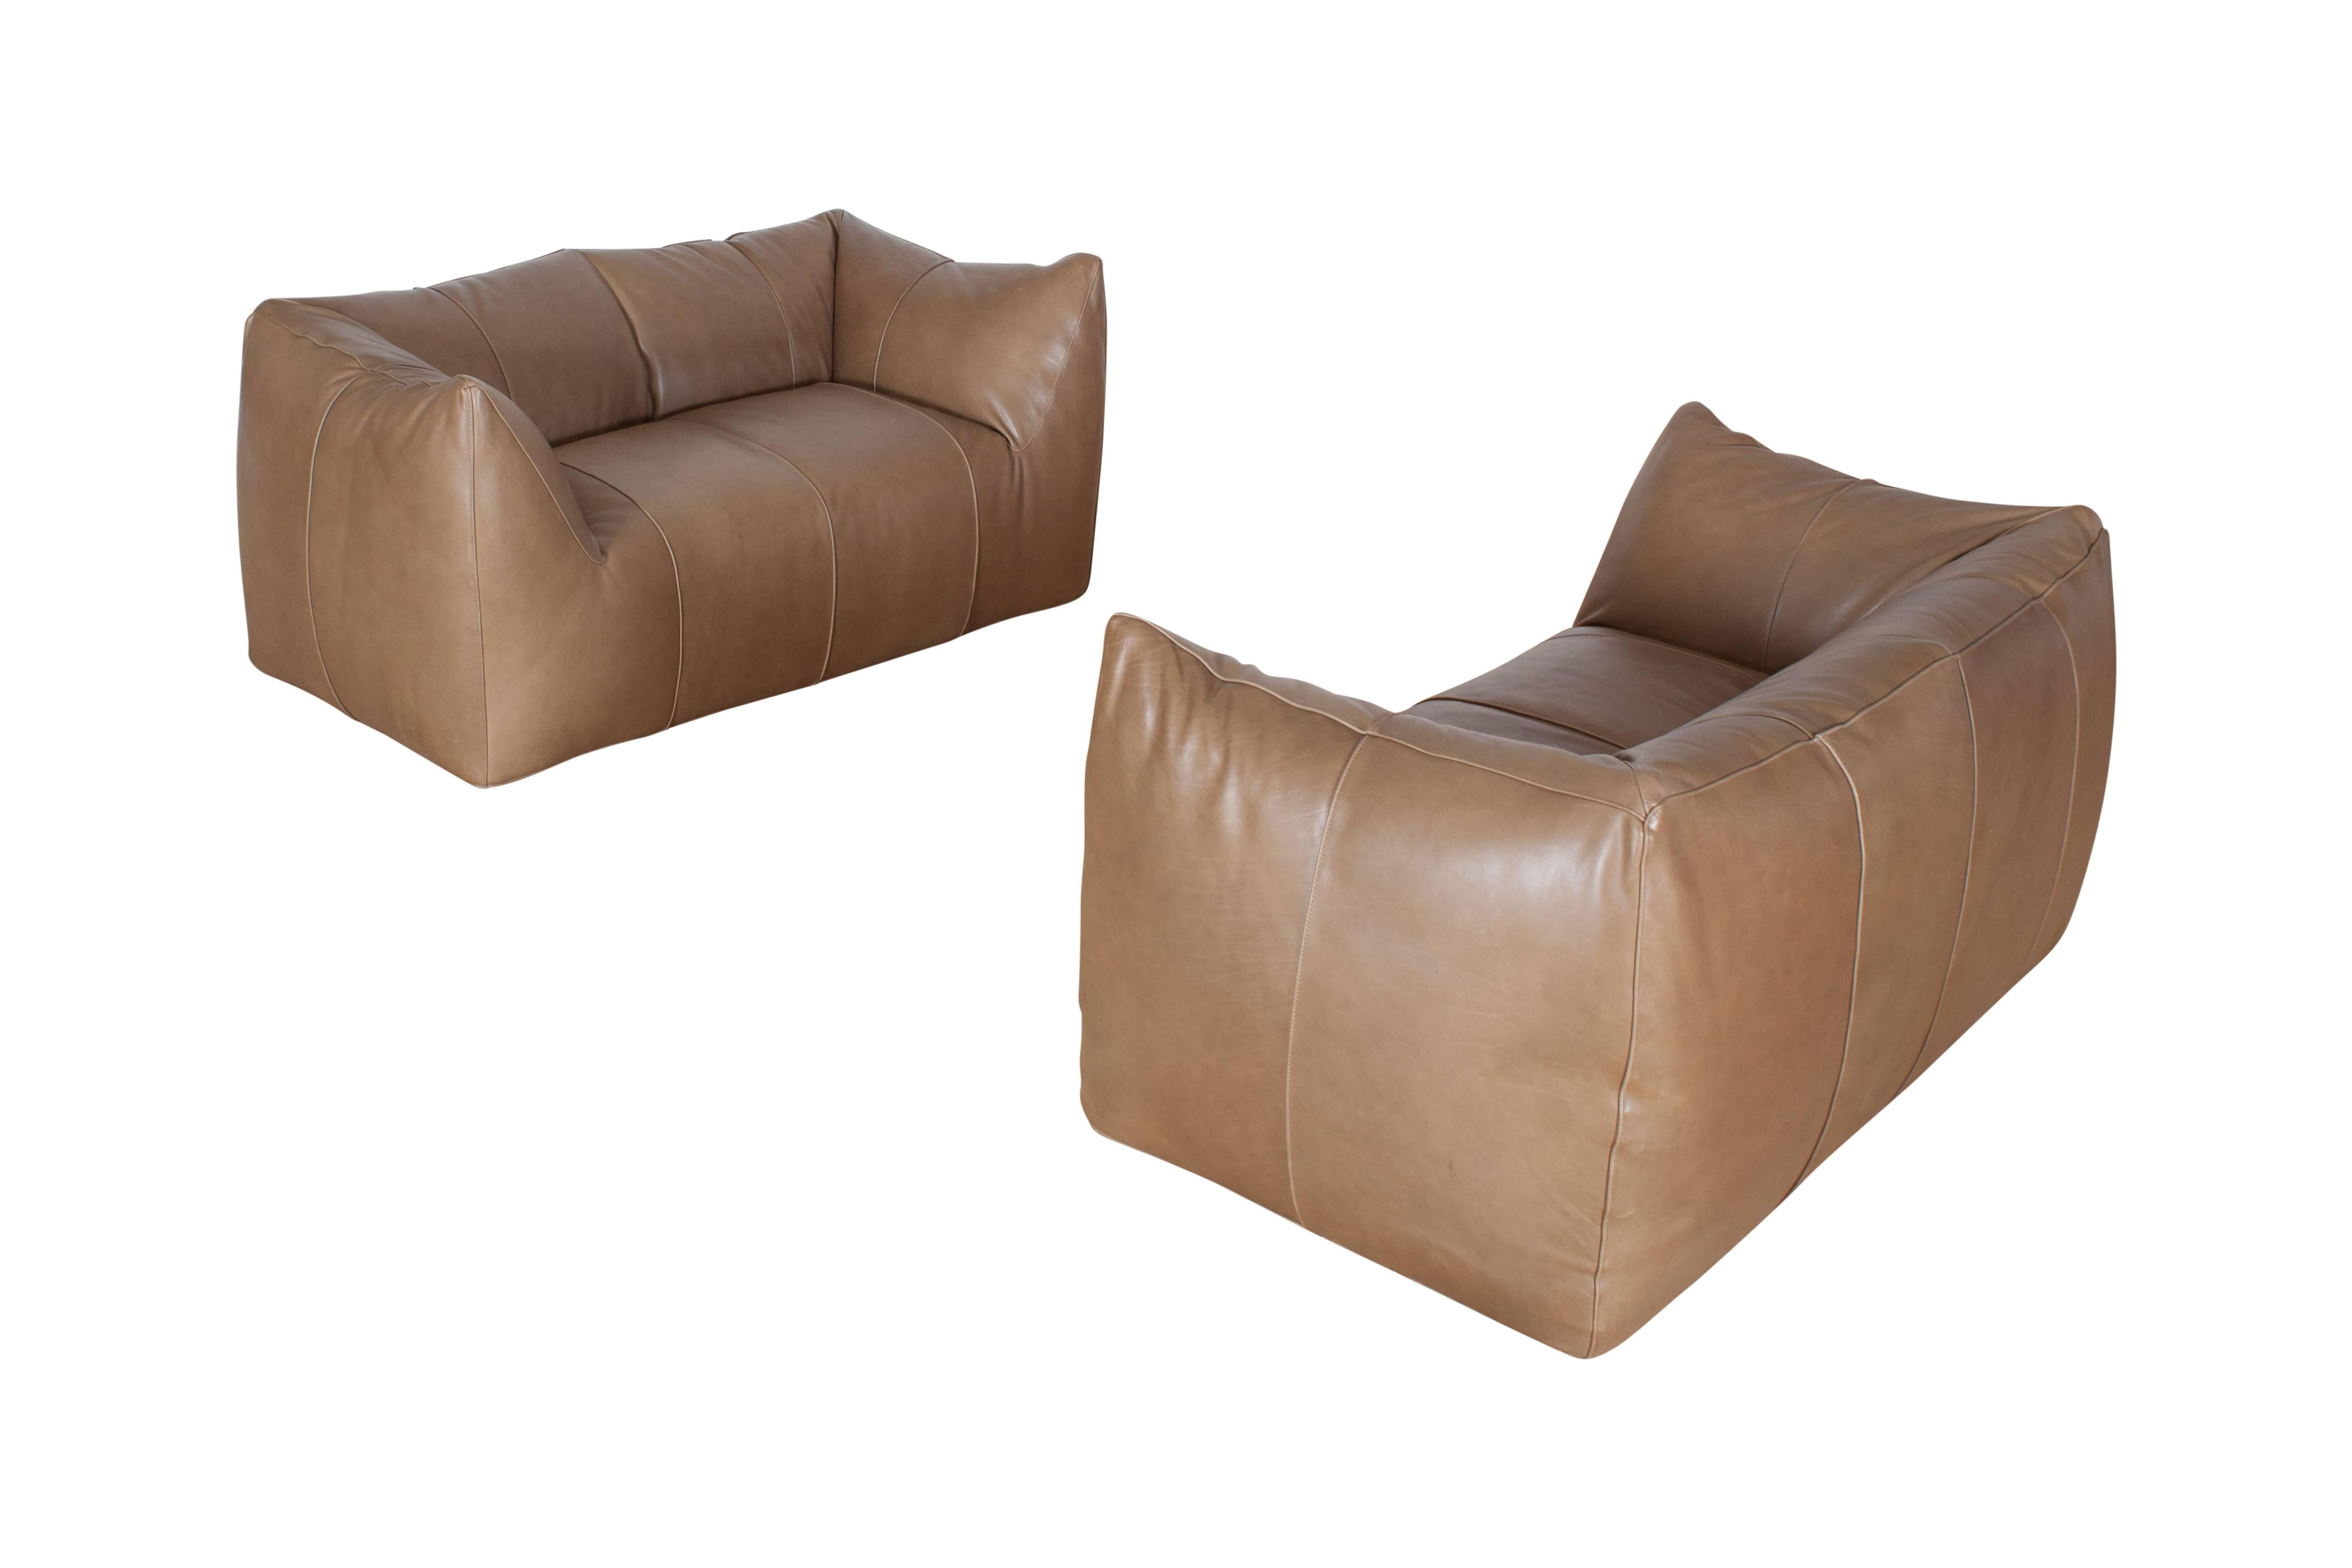 Leather 'Le Bambole' Two-Seat Sofa’s by Mario Bellini for B&B Italia, 1970s